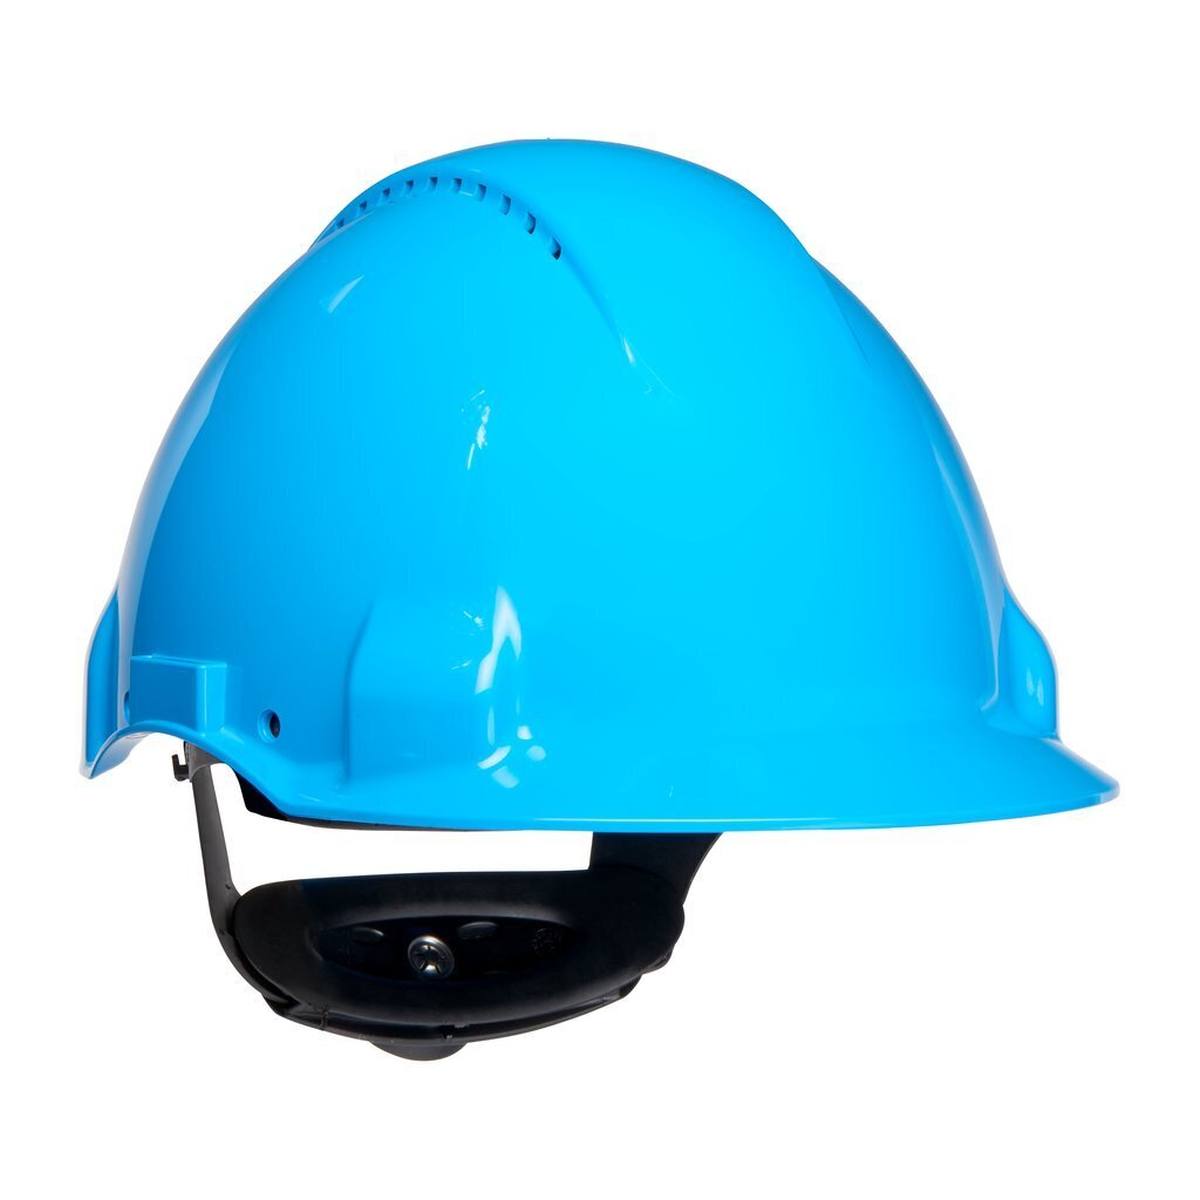 elmetto di sicurezza 3M G3000 G30NUB di colore blu, ventilato, con unghia, cricchetto e cinturino in plastica per saldatura